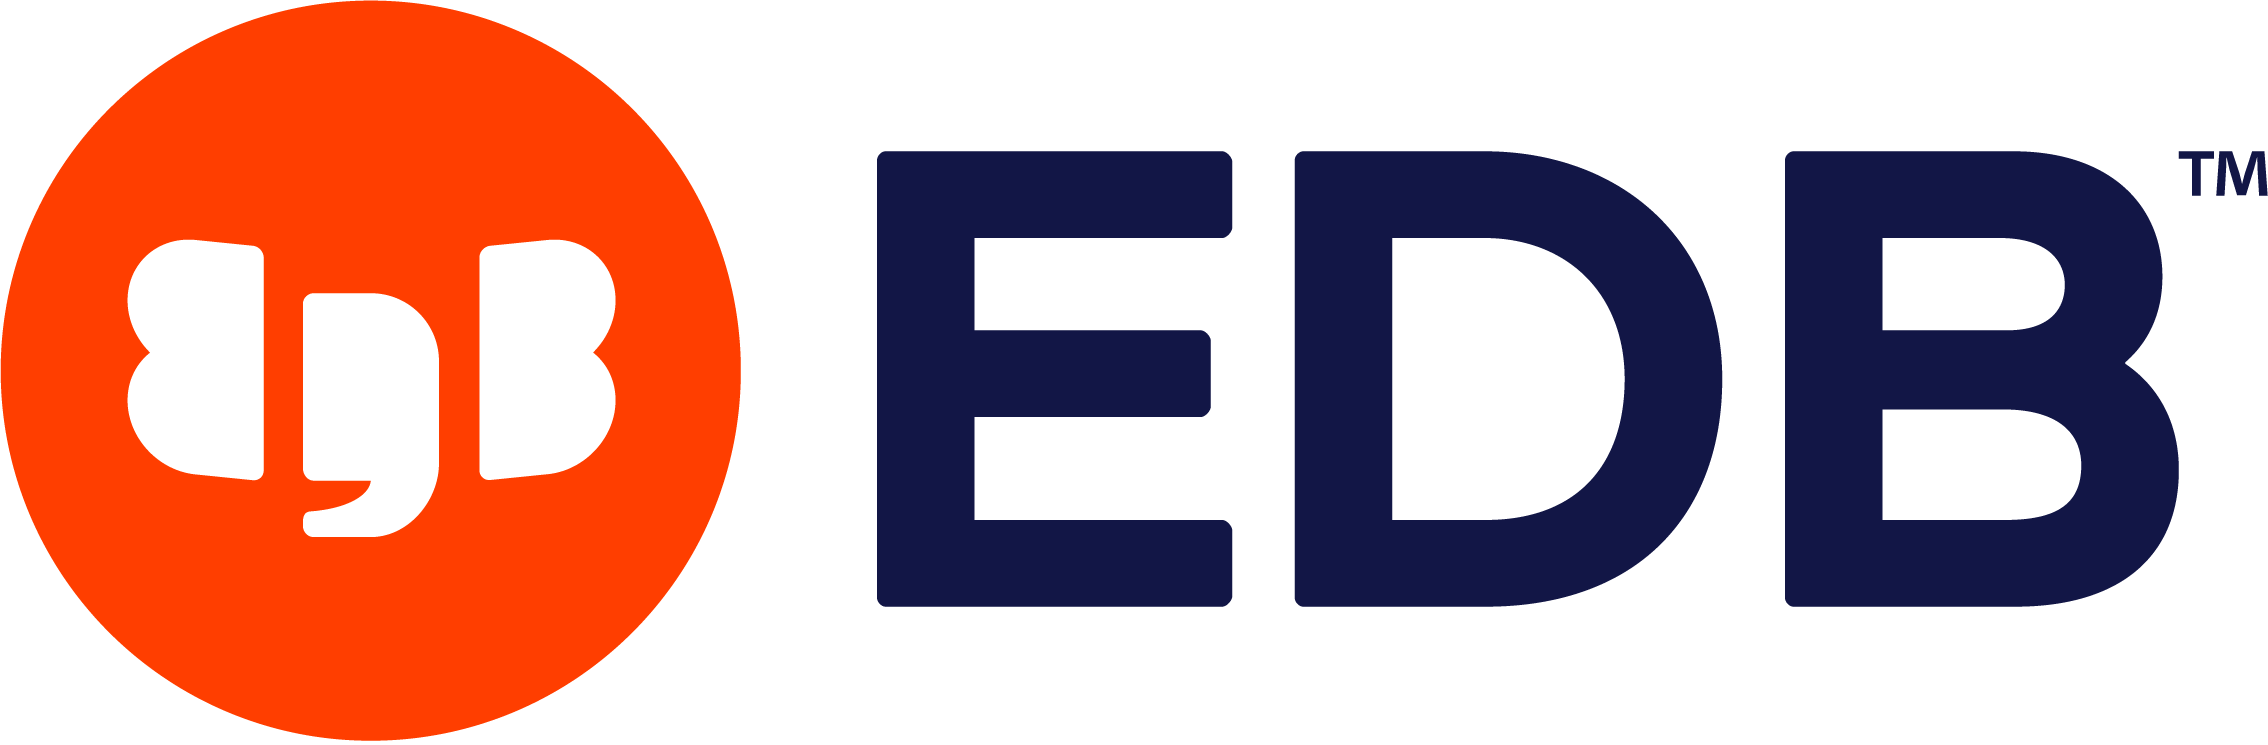 EDB | Customer Portal